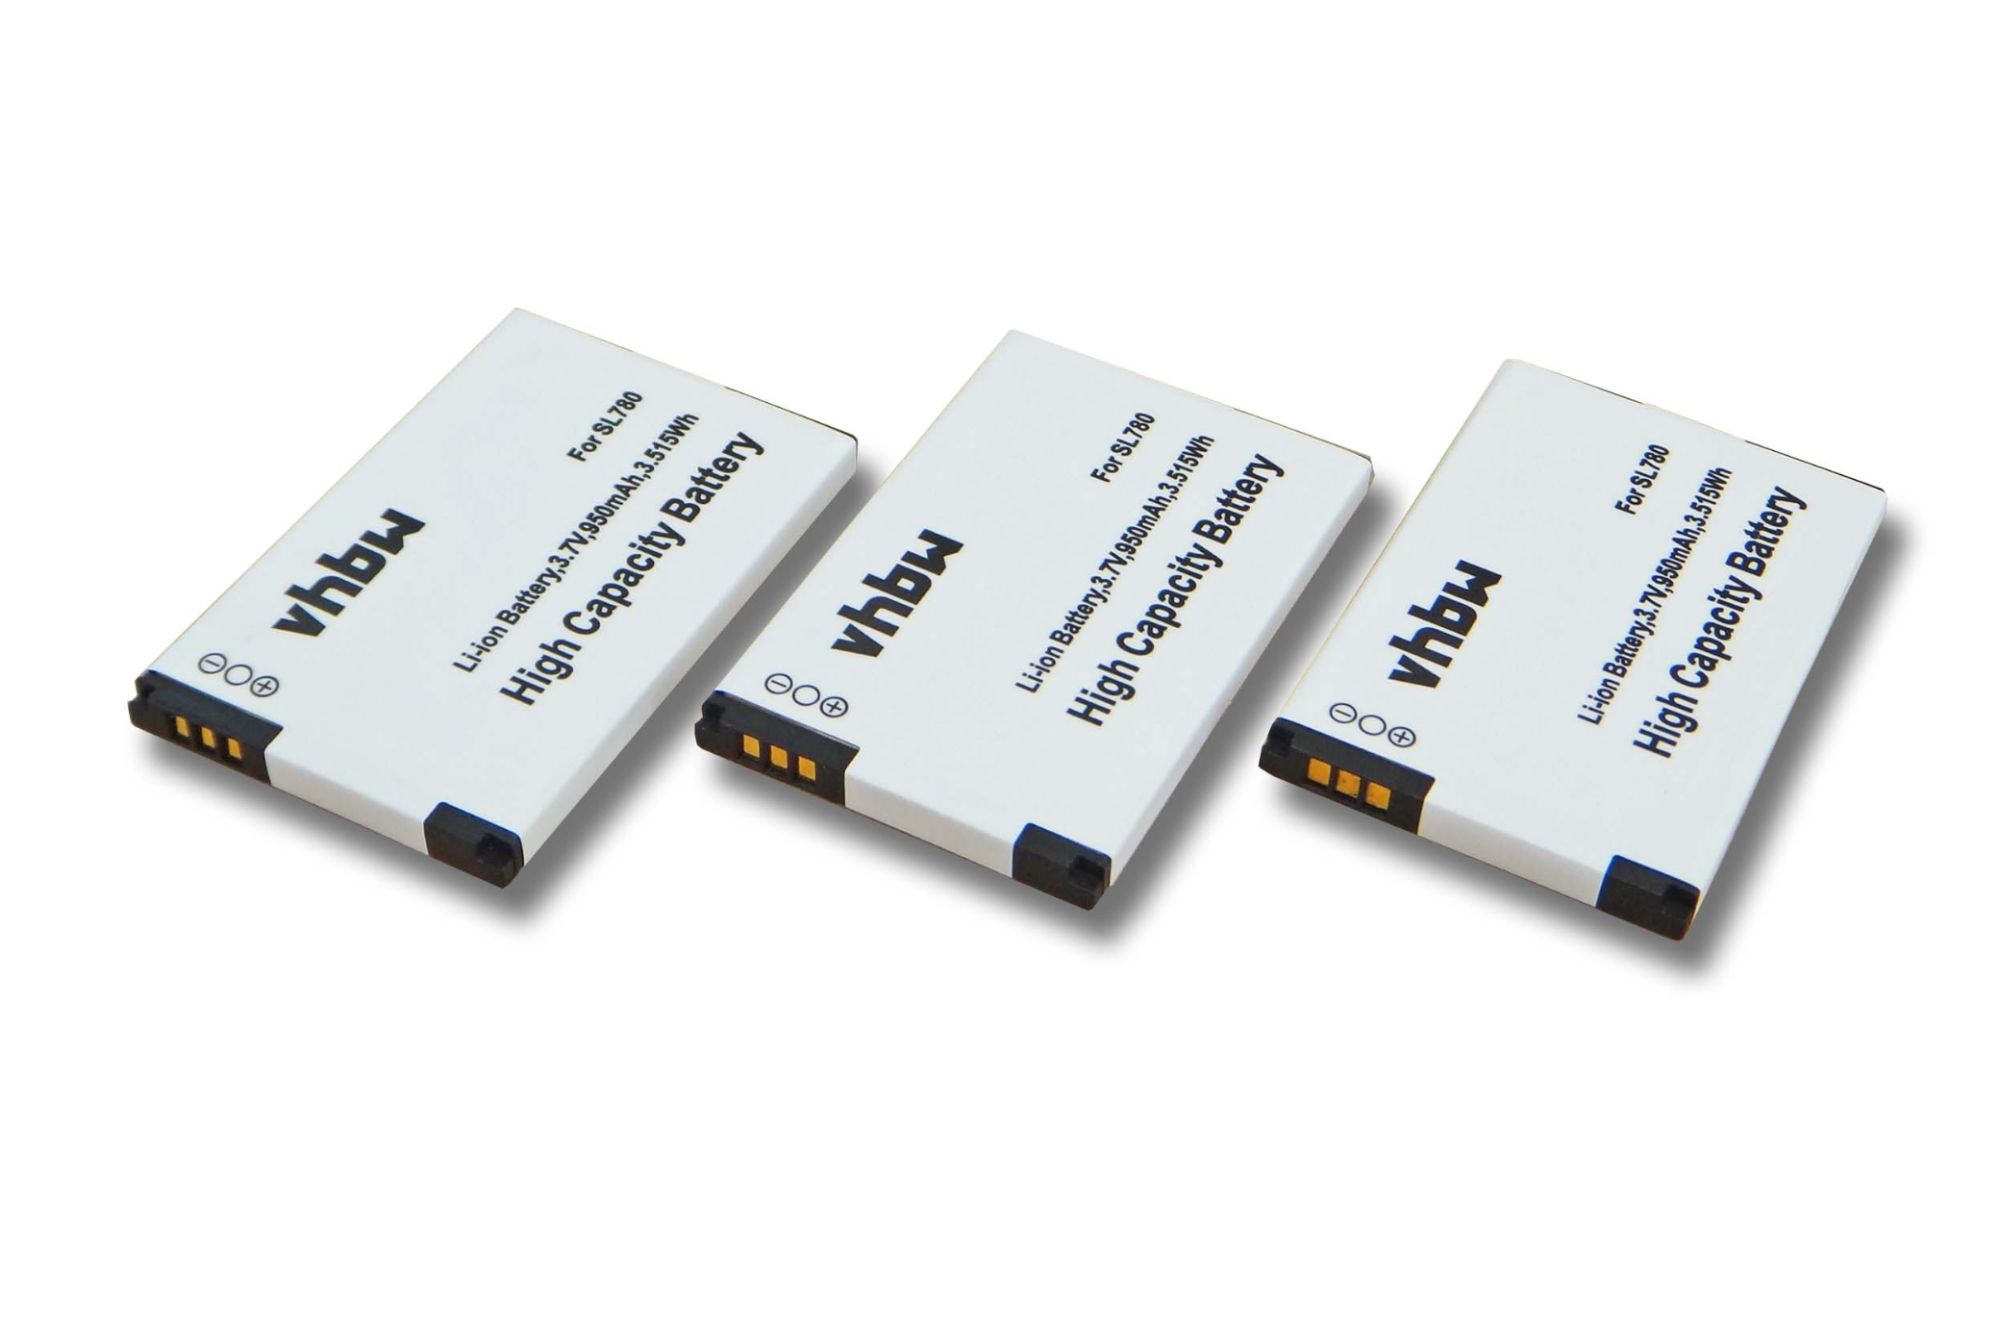 vhbw 3x Li-Ion batterie 950mAh (3.7V) pour combiné téléphonique téléphone fixe Siemens Gigaset SL788, SL78, SL78H, X656, SL610 remplace 4250366817255